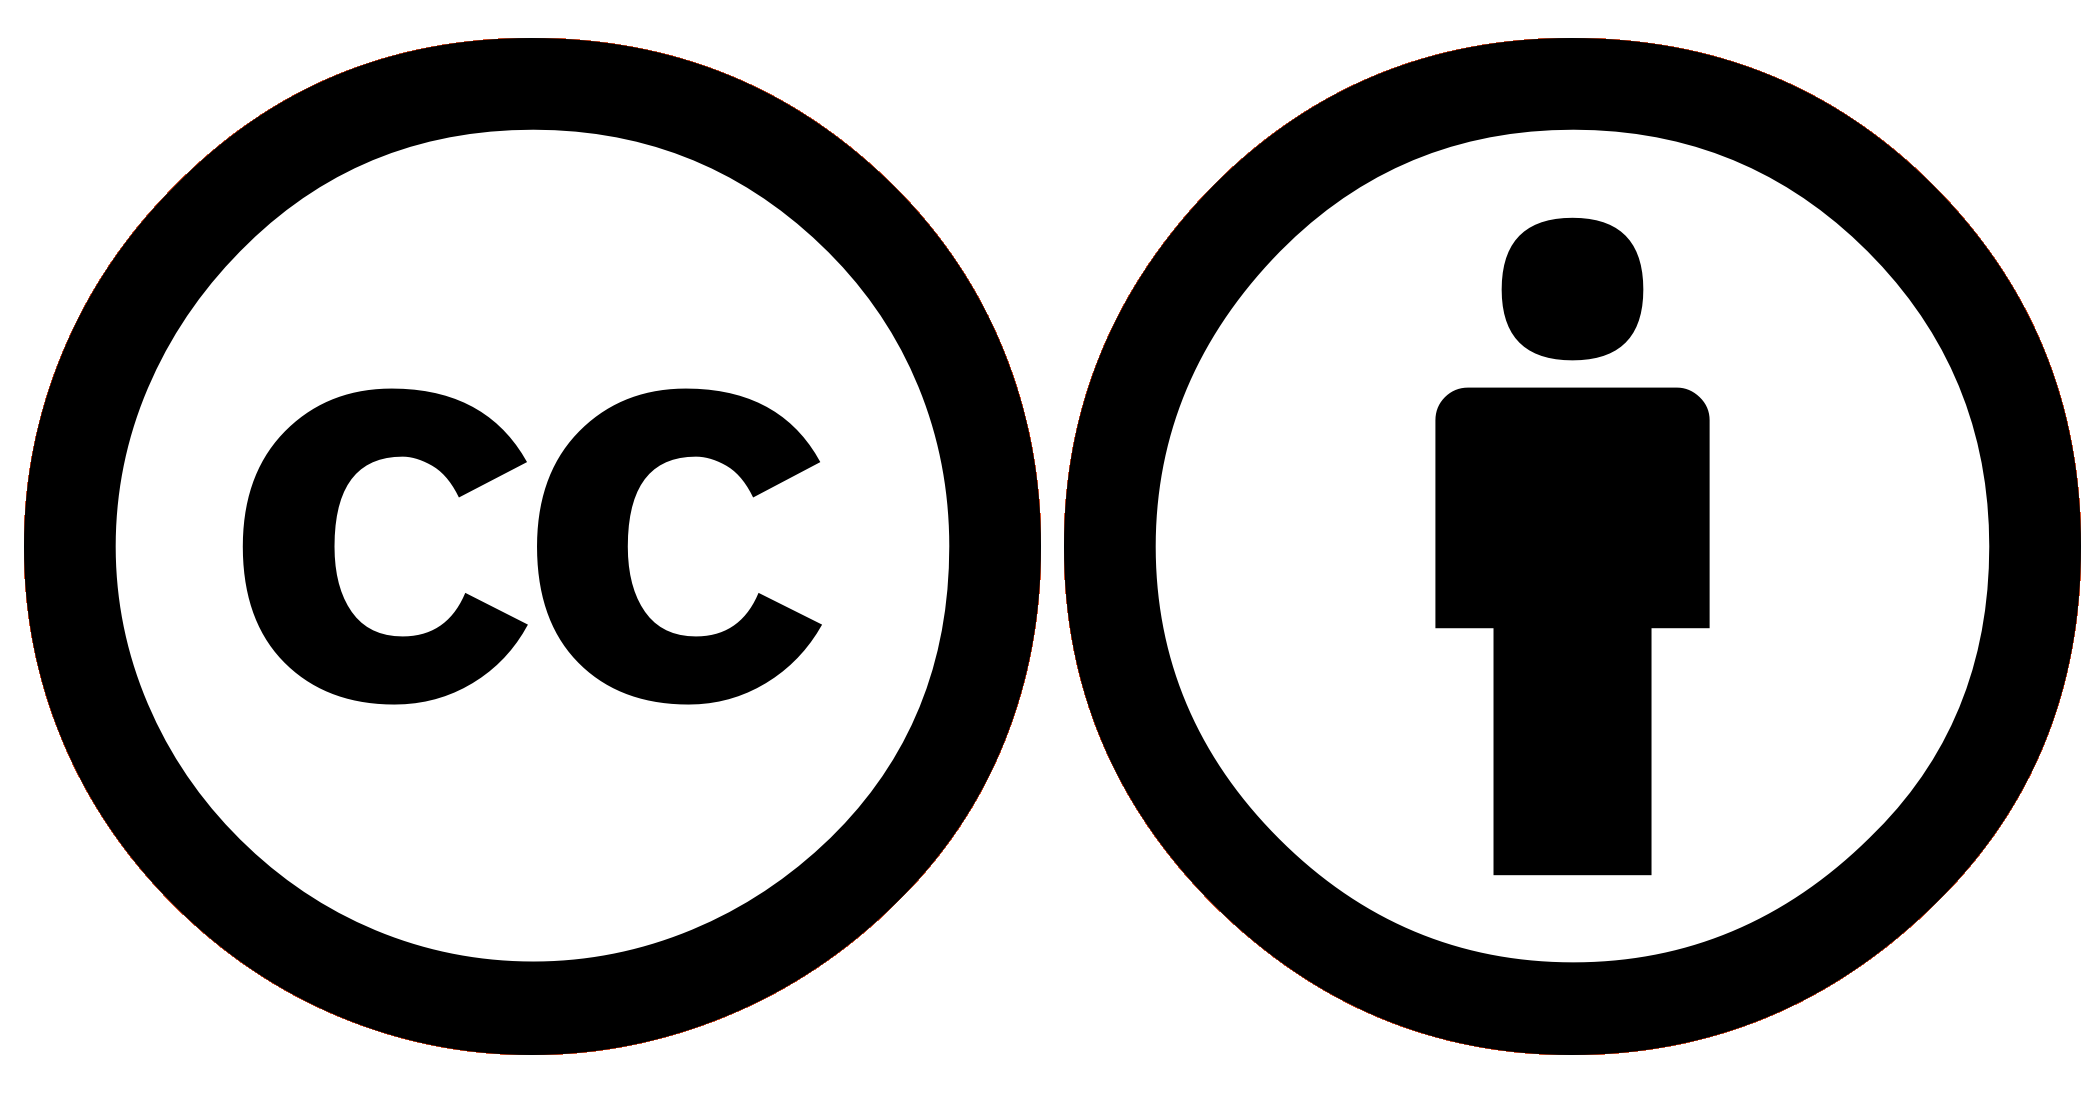 Creative Commons значки. Creative Commons Attribution 4.0. (Cc by 4.0). Creative Commons Attribution.